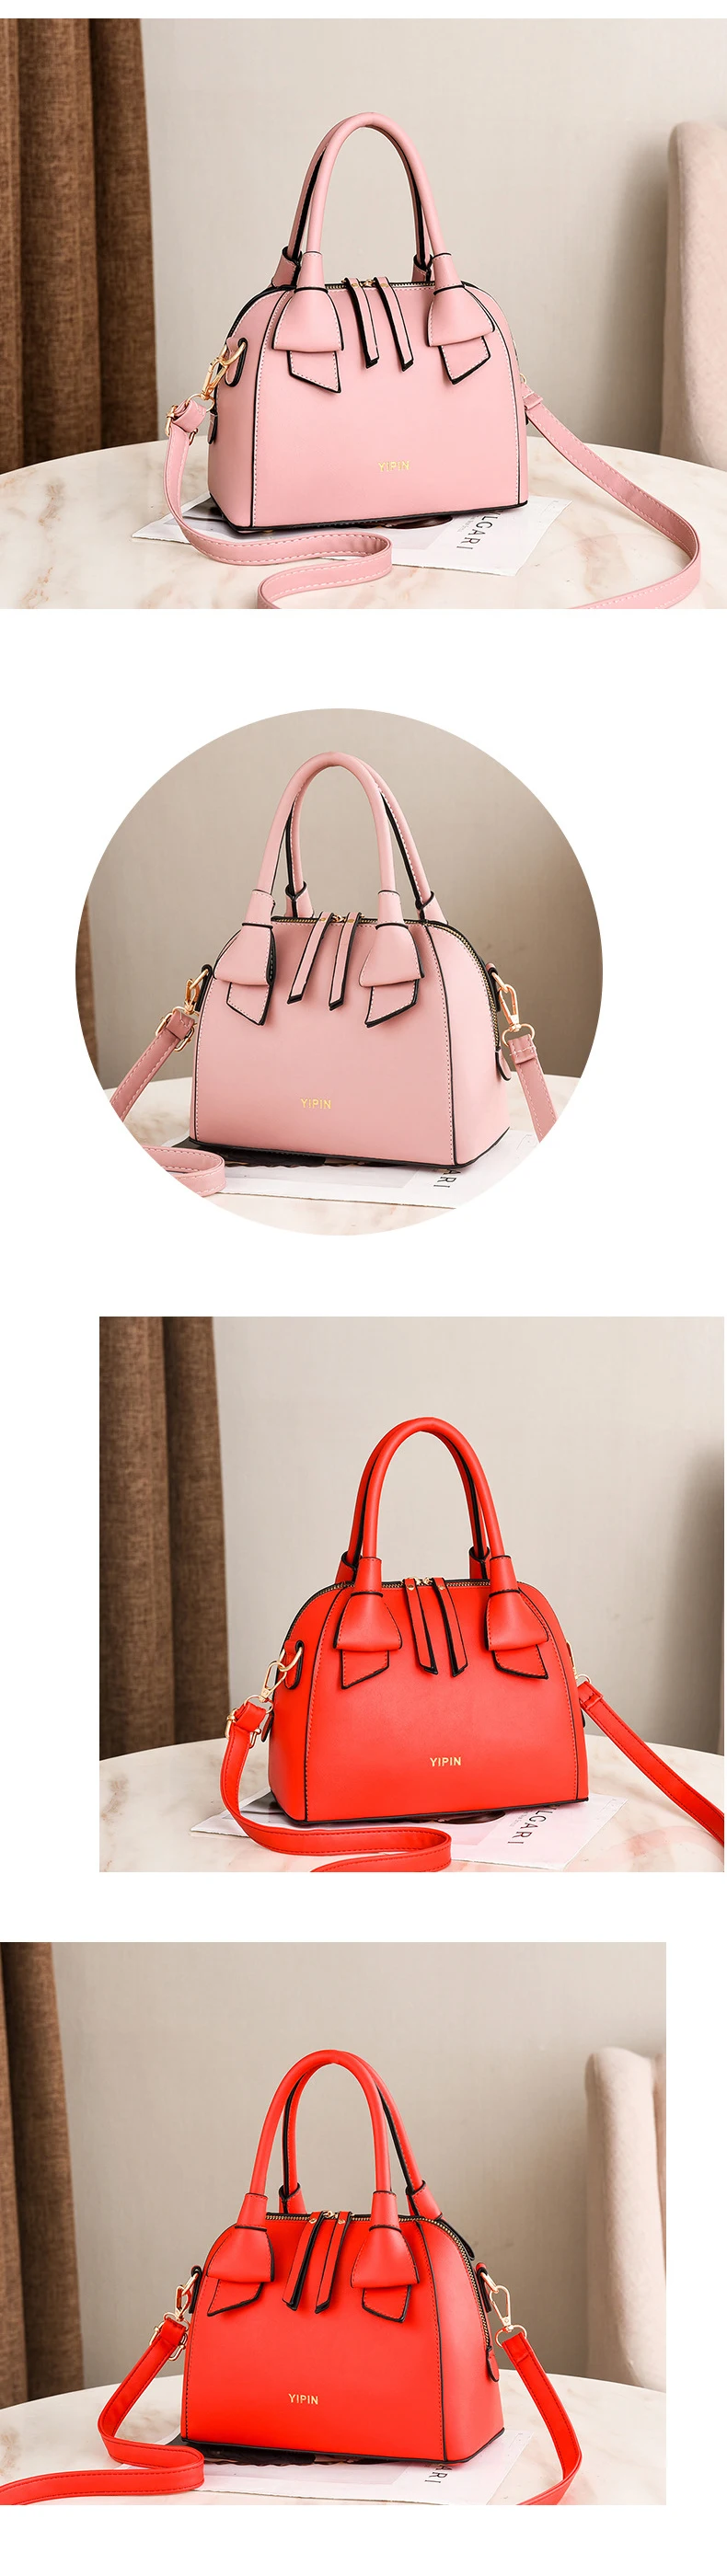 YBYT модные роскошные сумки женские сумки Дизайнерские Большие Capasity PU кожаная сумка для женщин простая сумка через плечо сумка в виде ракушки